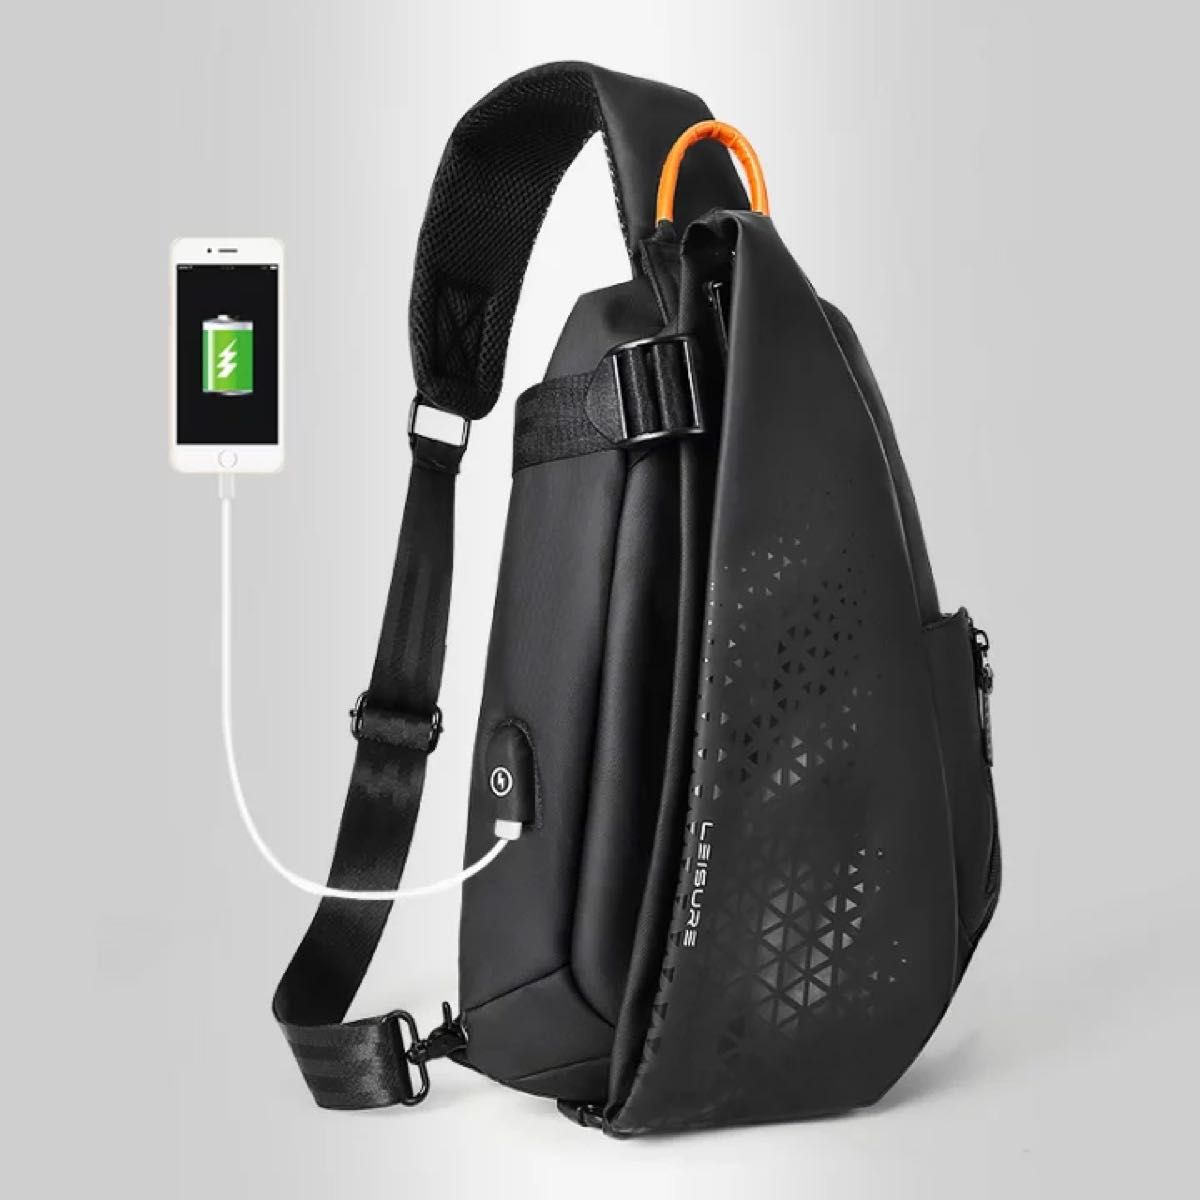 ボディバッグ USBケーブル 携帯充電 バッグ メンズ 大容量 ポケット付き シンプル スポーツ ランニング 仕事 旅行